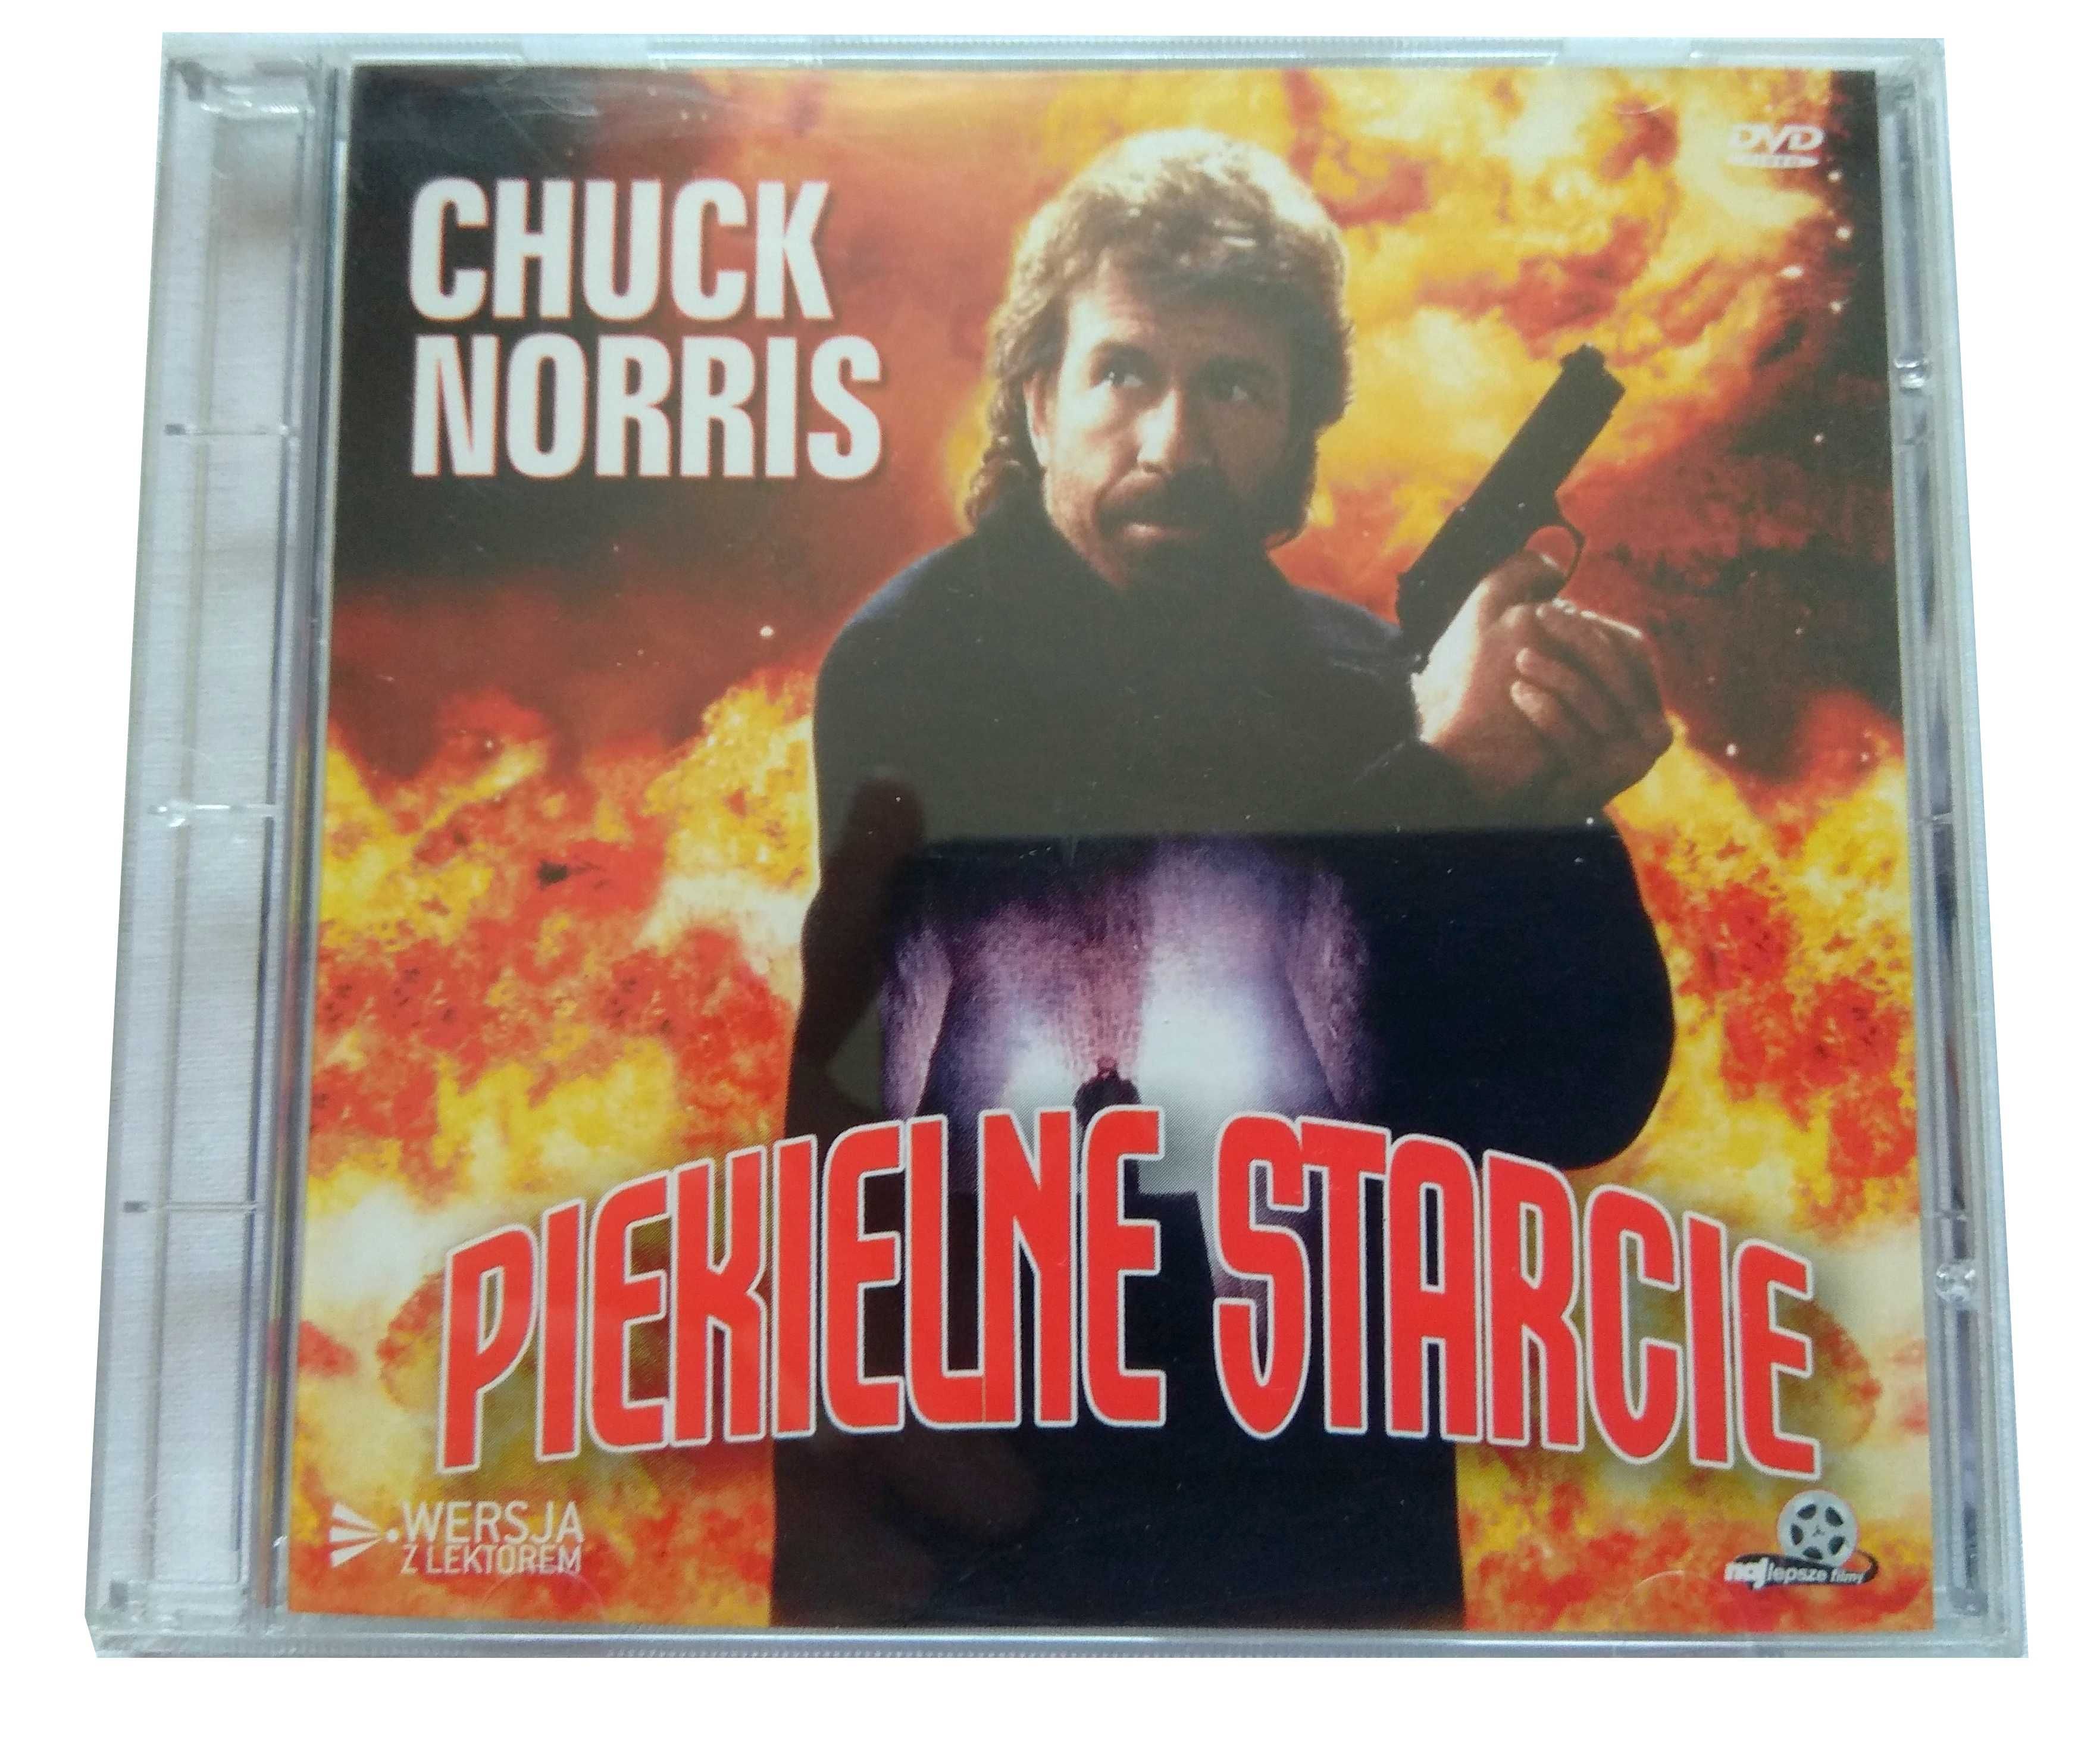 Film DVD - Piekielne starcie (Chuck Norris) - (1994r.)